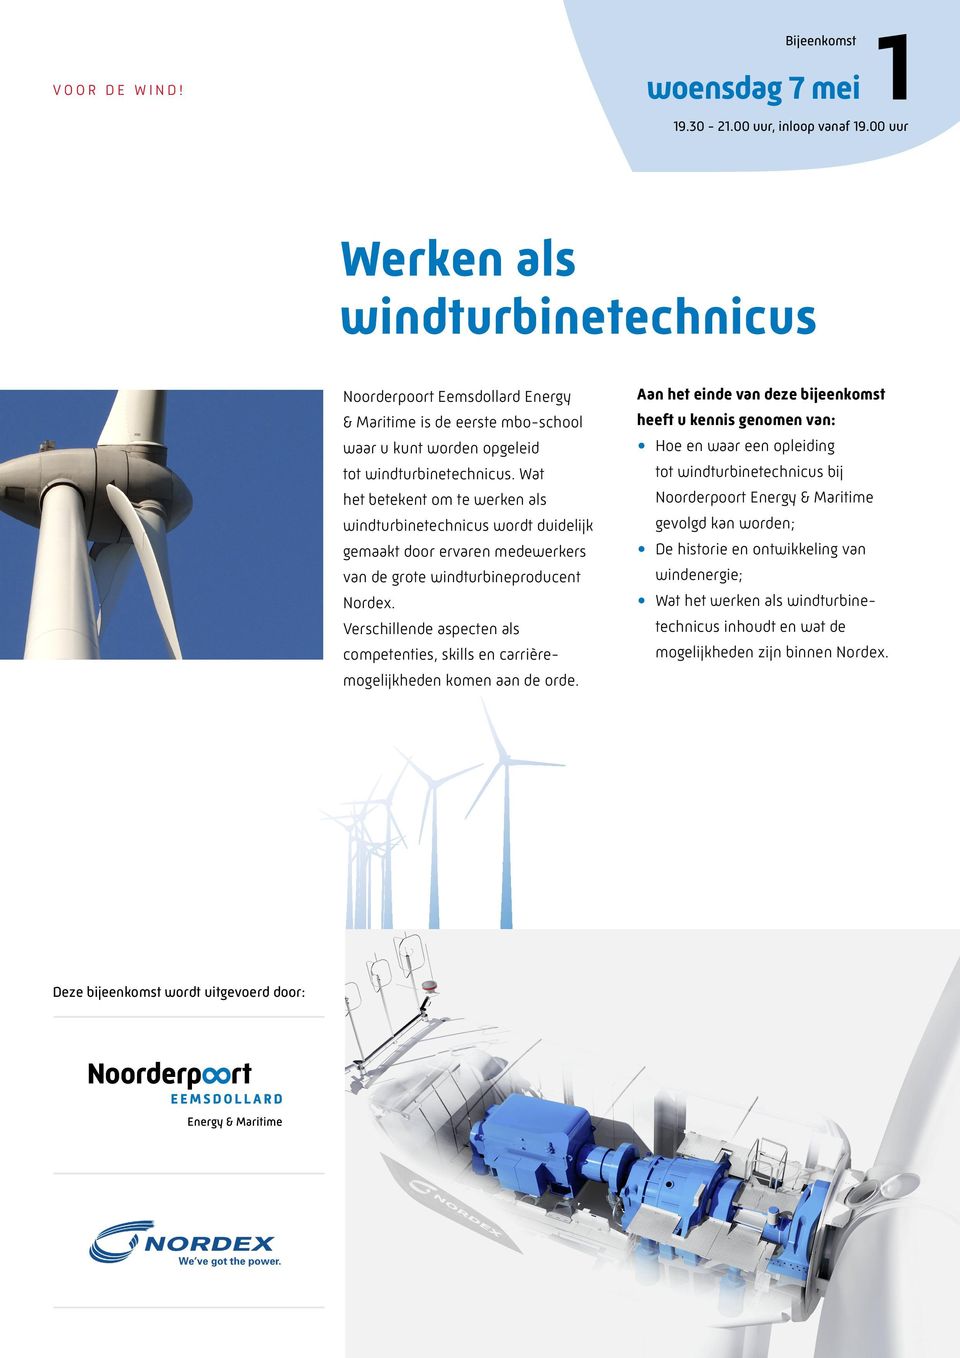 Wat het betekent om te werken als windturbinetechnicus wordt duidelijk gemaakt door ervaren medewerkers van de grote windturbineproducent Nordex.